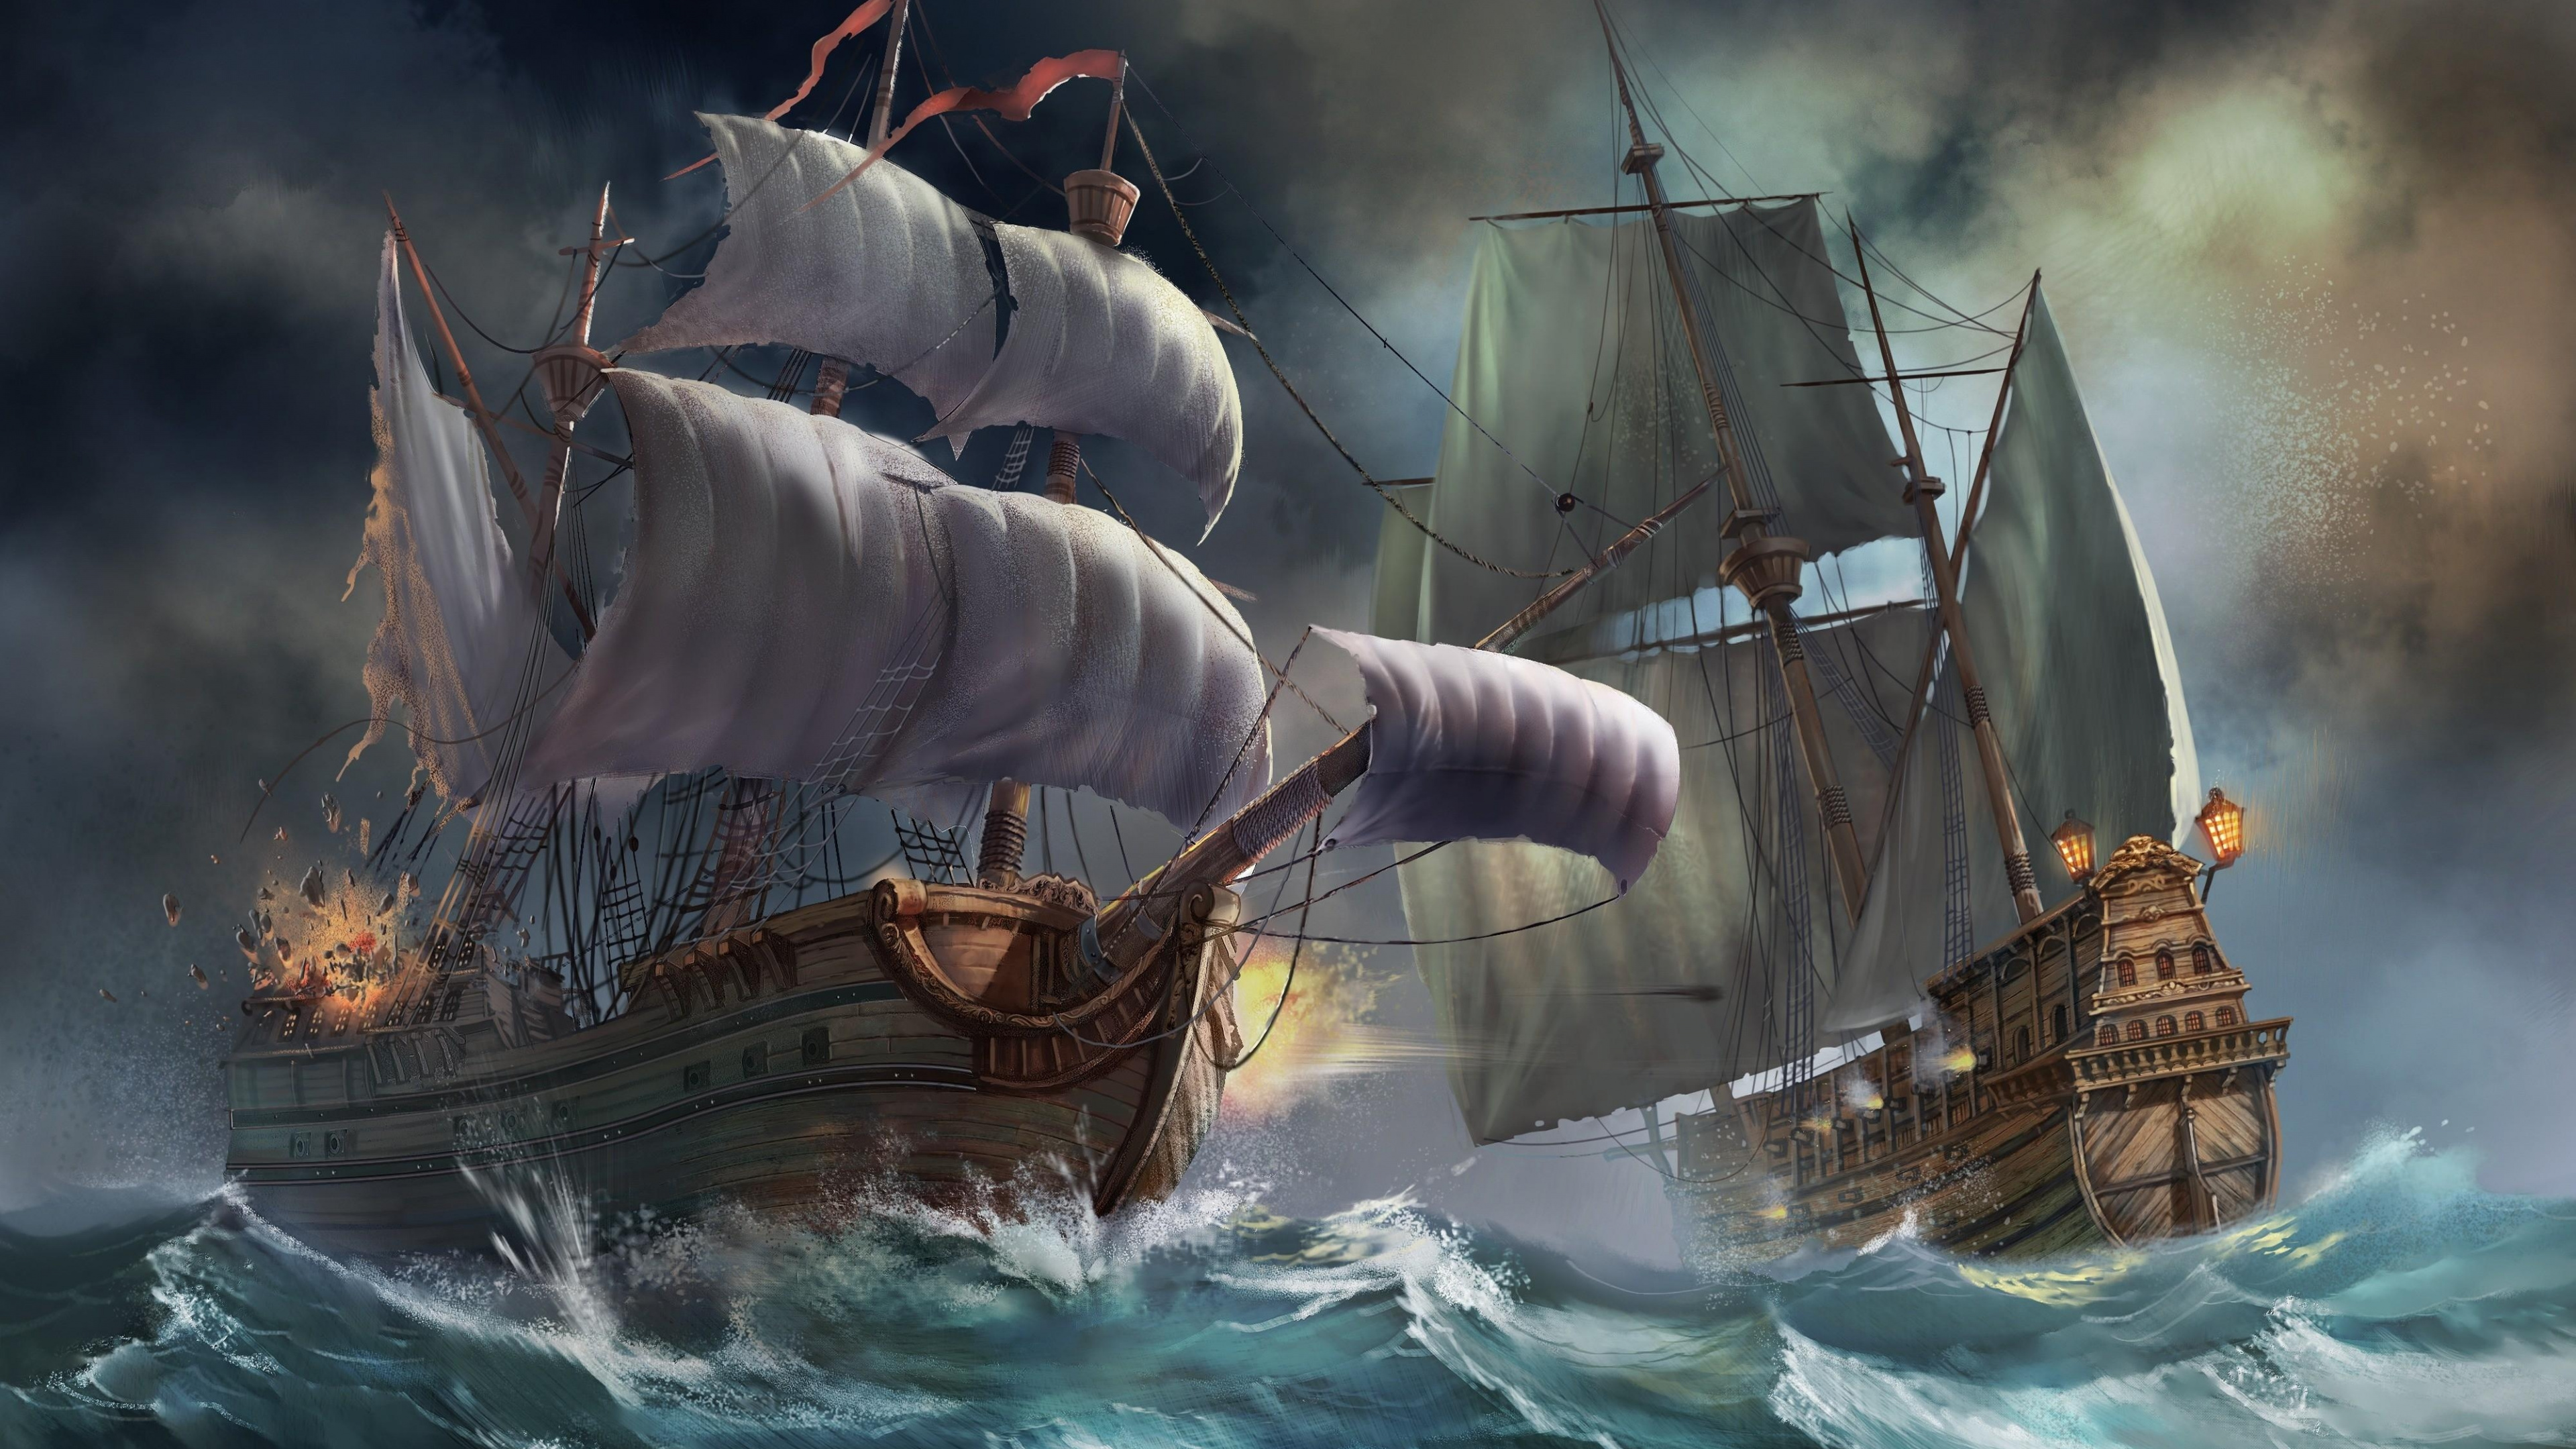 Braunes Und Weißes Segelschiff Auf Dem Wasser. Wallpaper in 3840x2160 Resolution